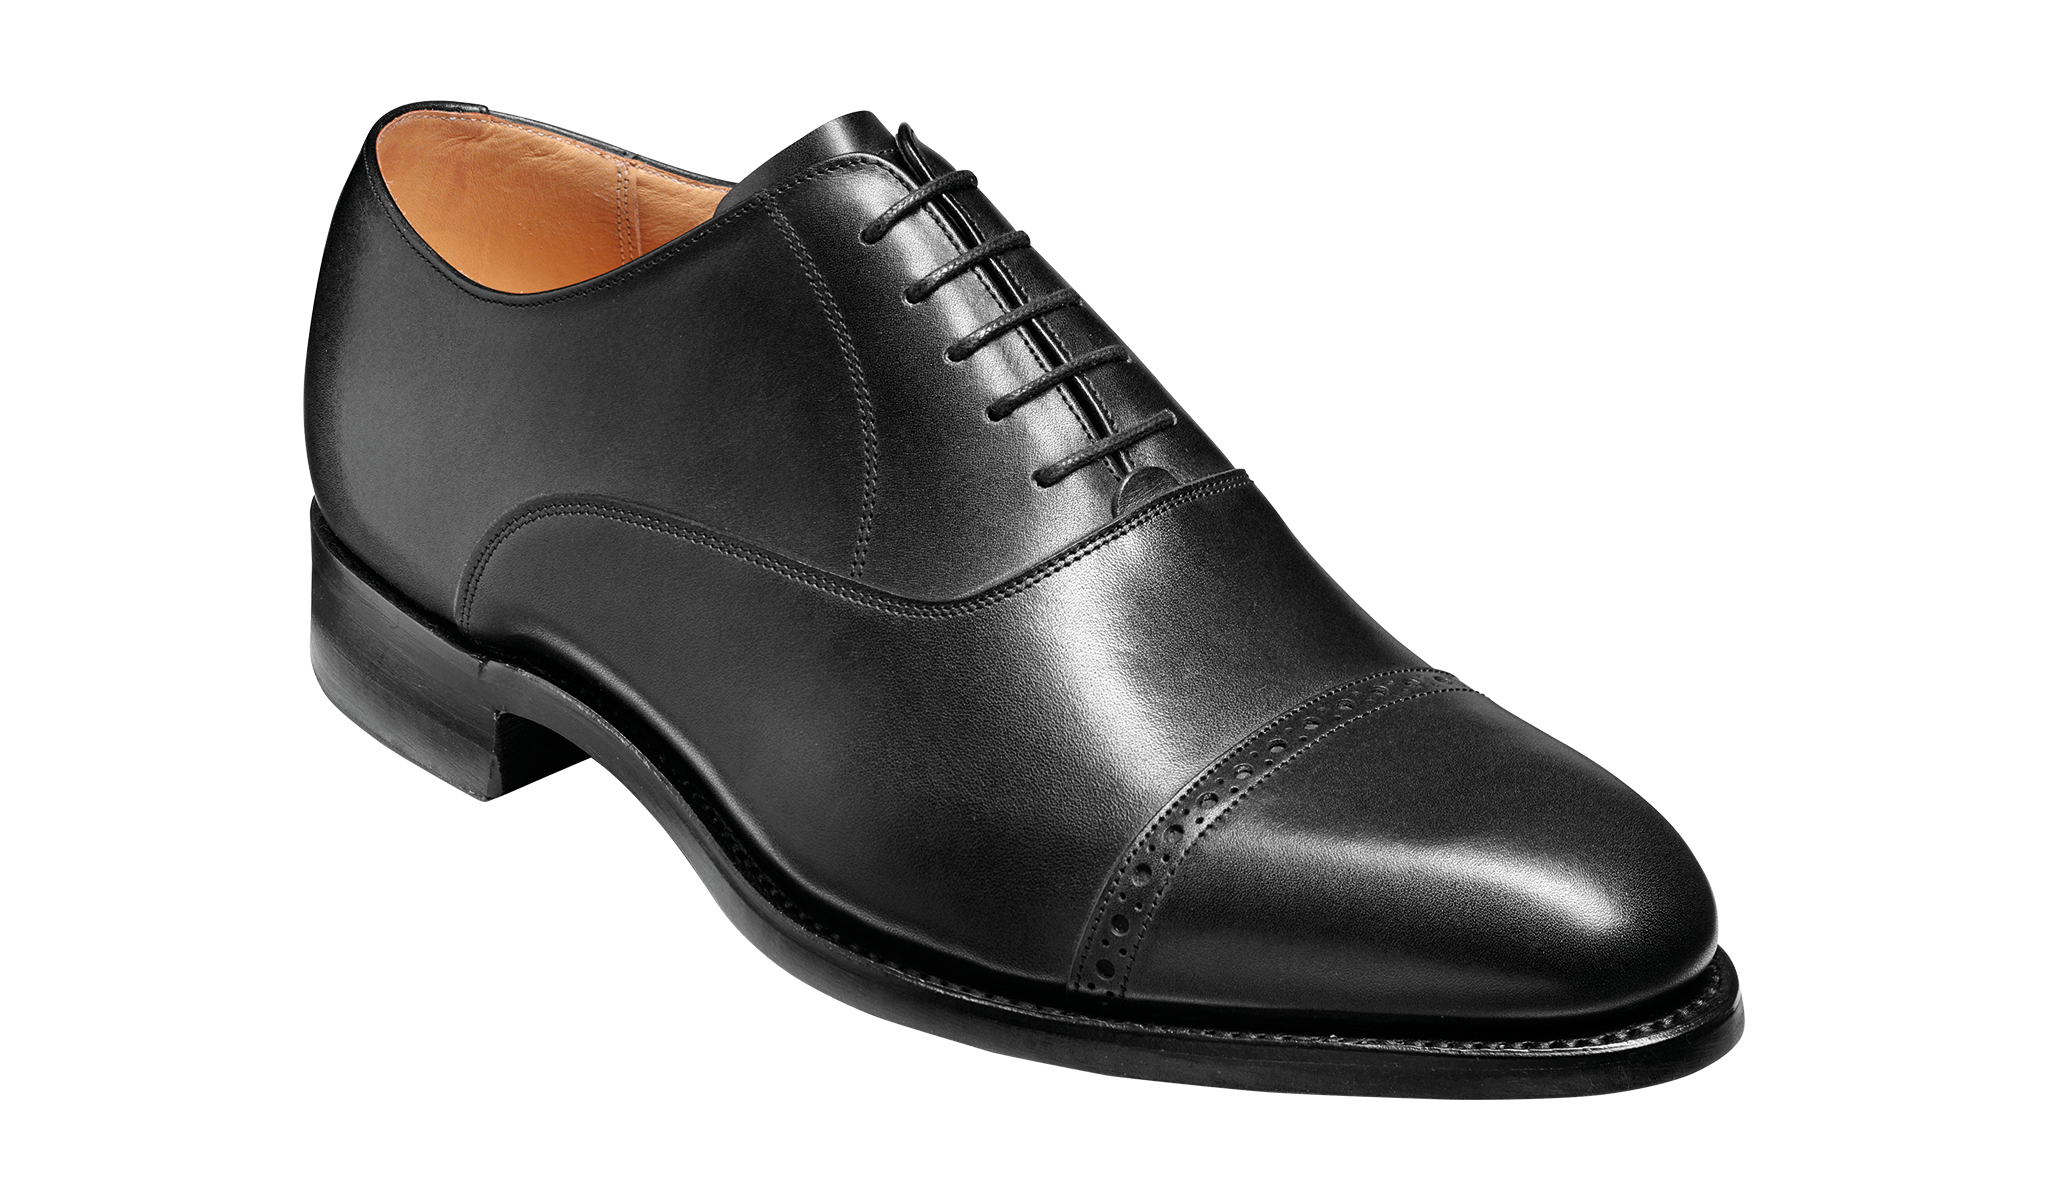 Men's black work shoes by Barker